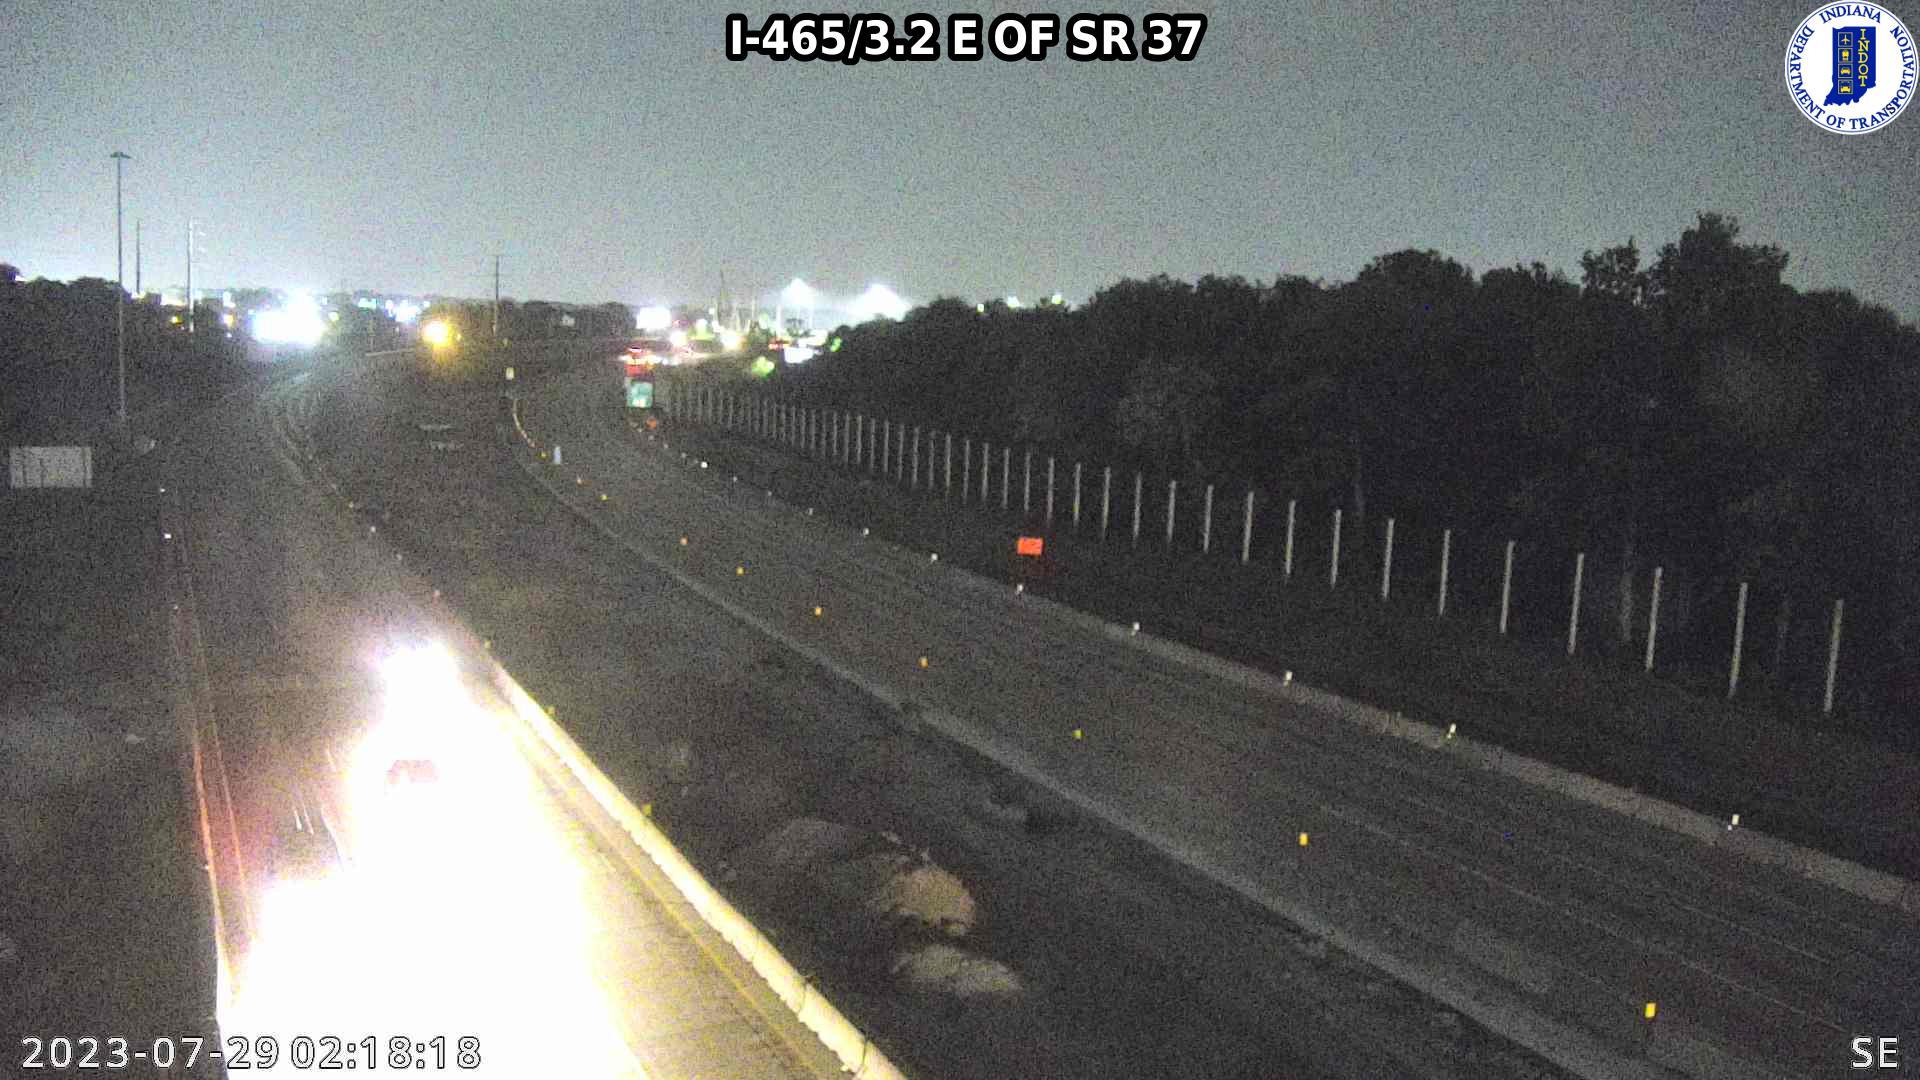 Indianapolis: I-465: I-465/3.2 E OF SR Traffic Camera